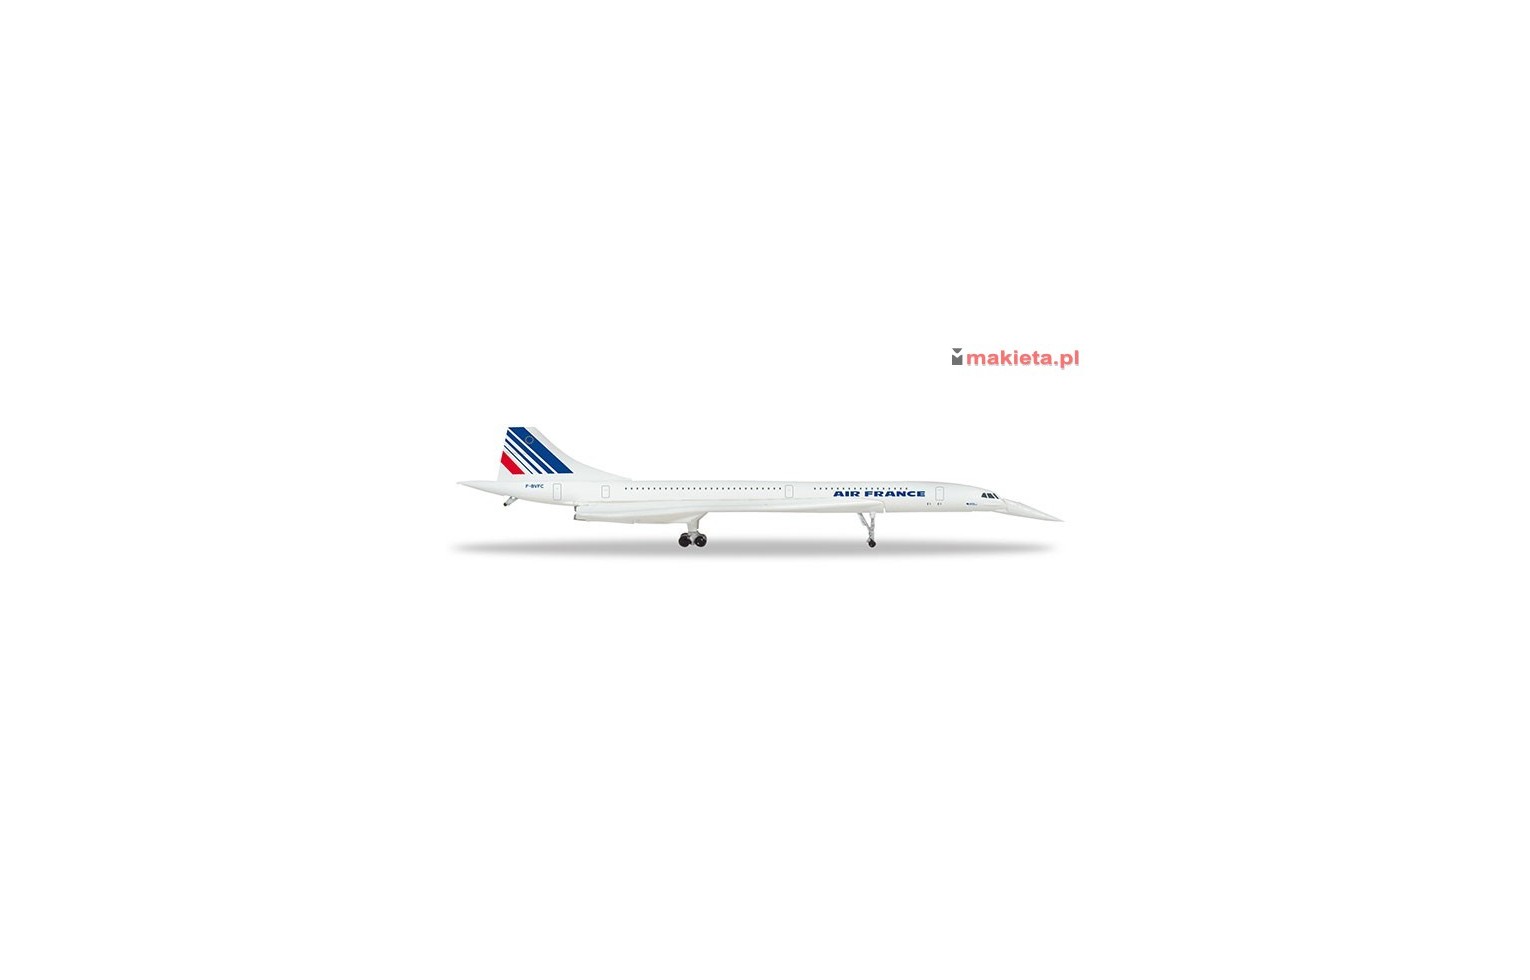 HERPA 532839, Air France Concorde, skala 1:500.